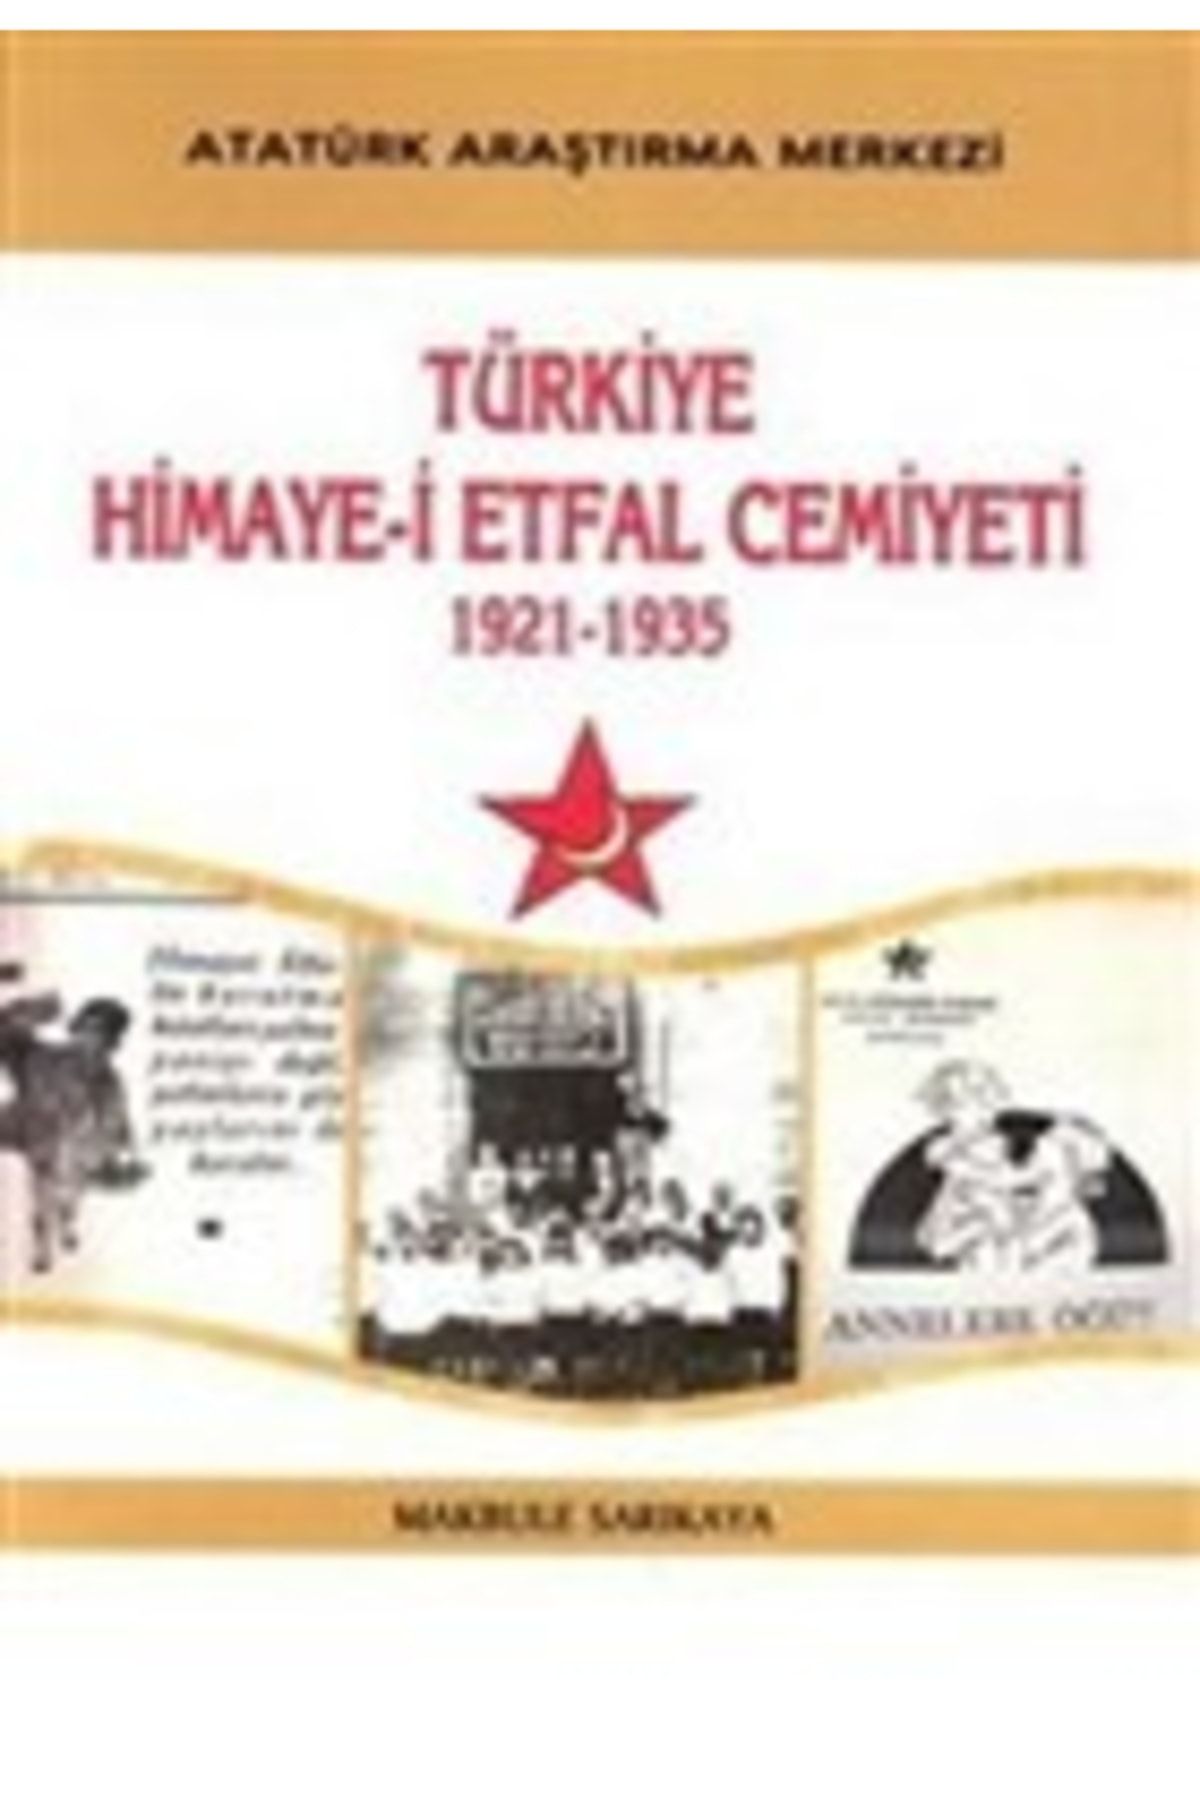 Atatürk Araştırma Merkezi Türkiye Himaye-i Etfal Cemiyeti